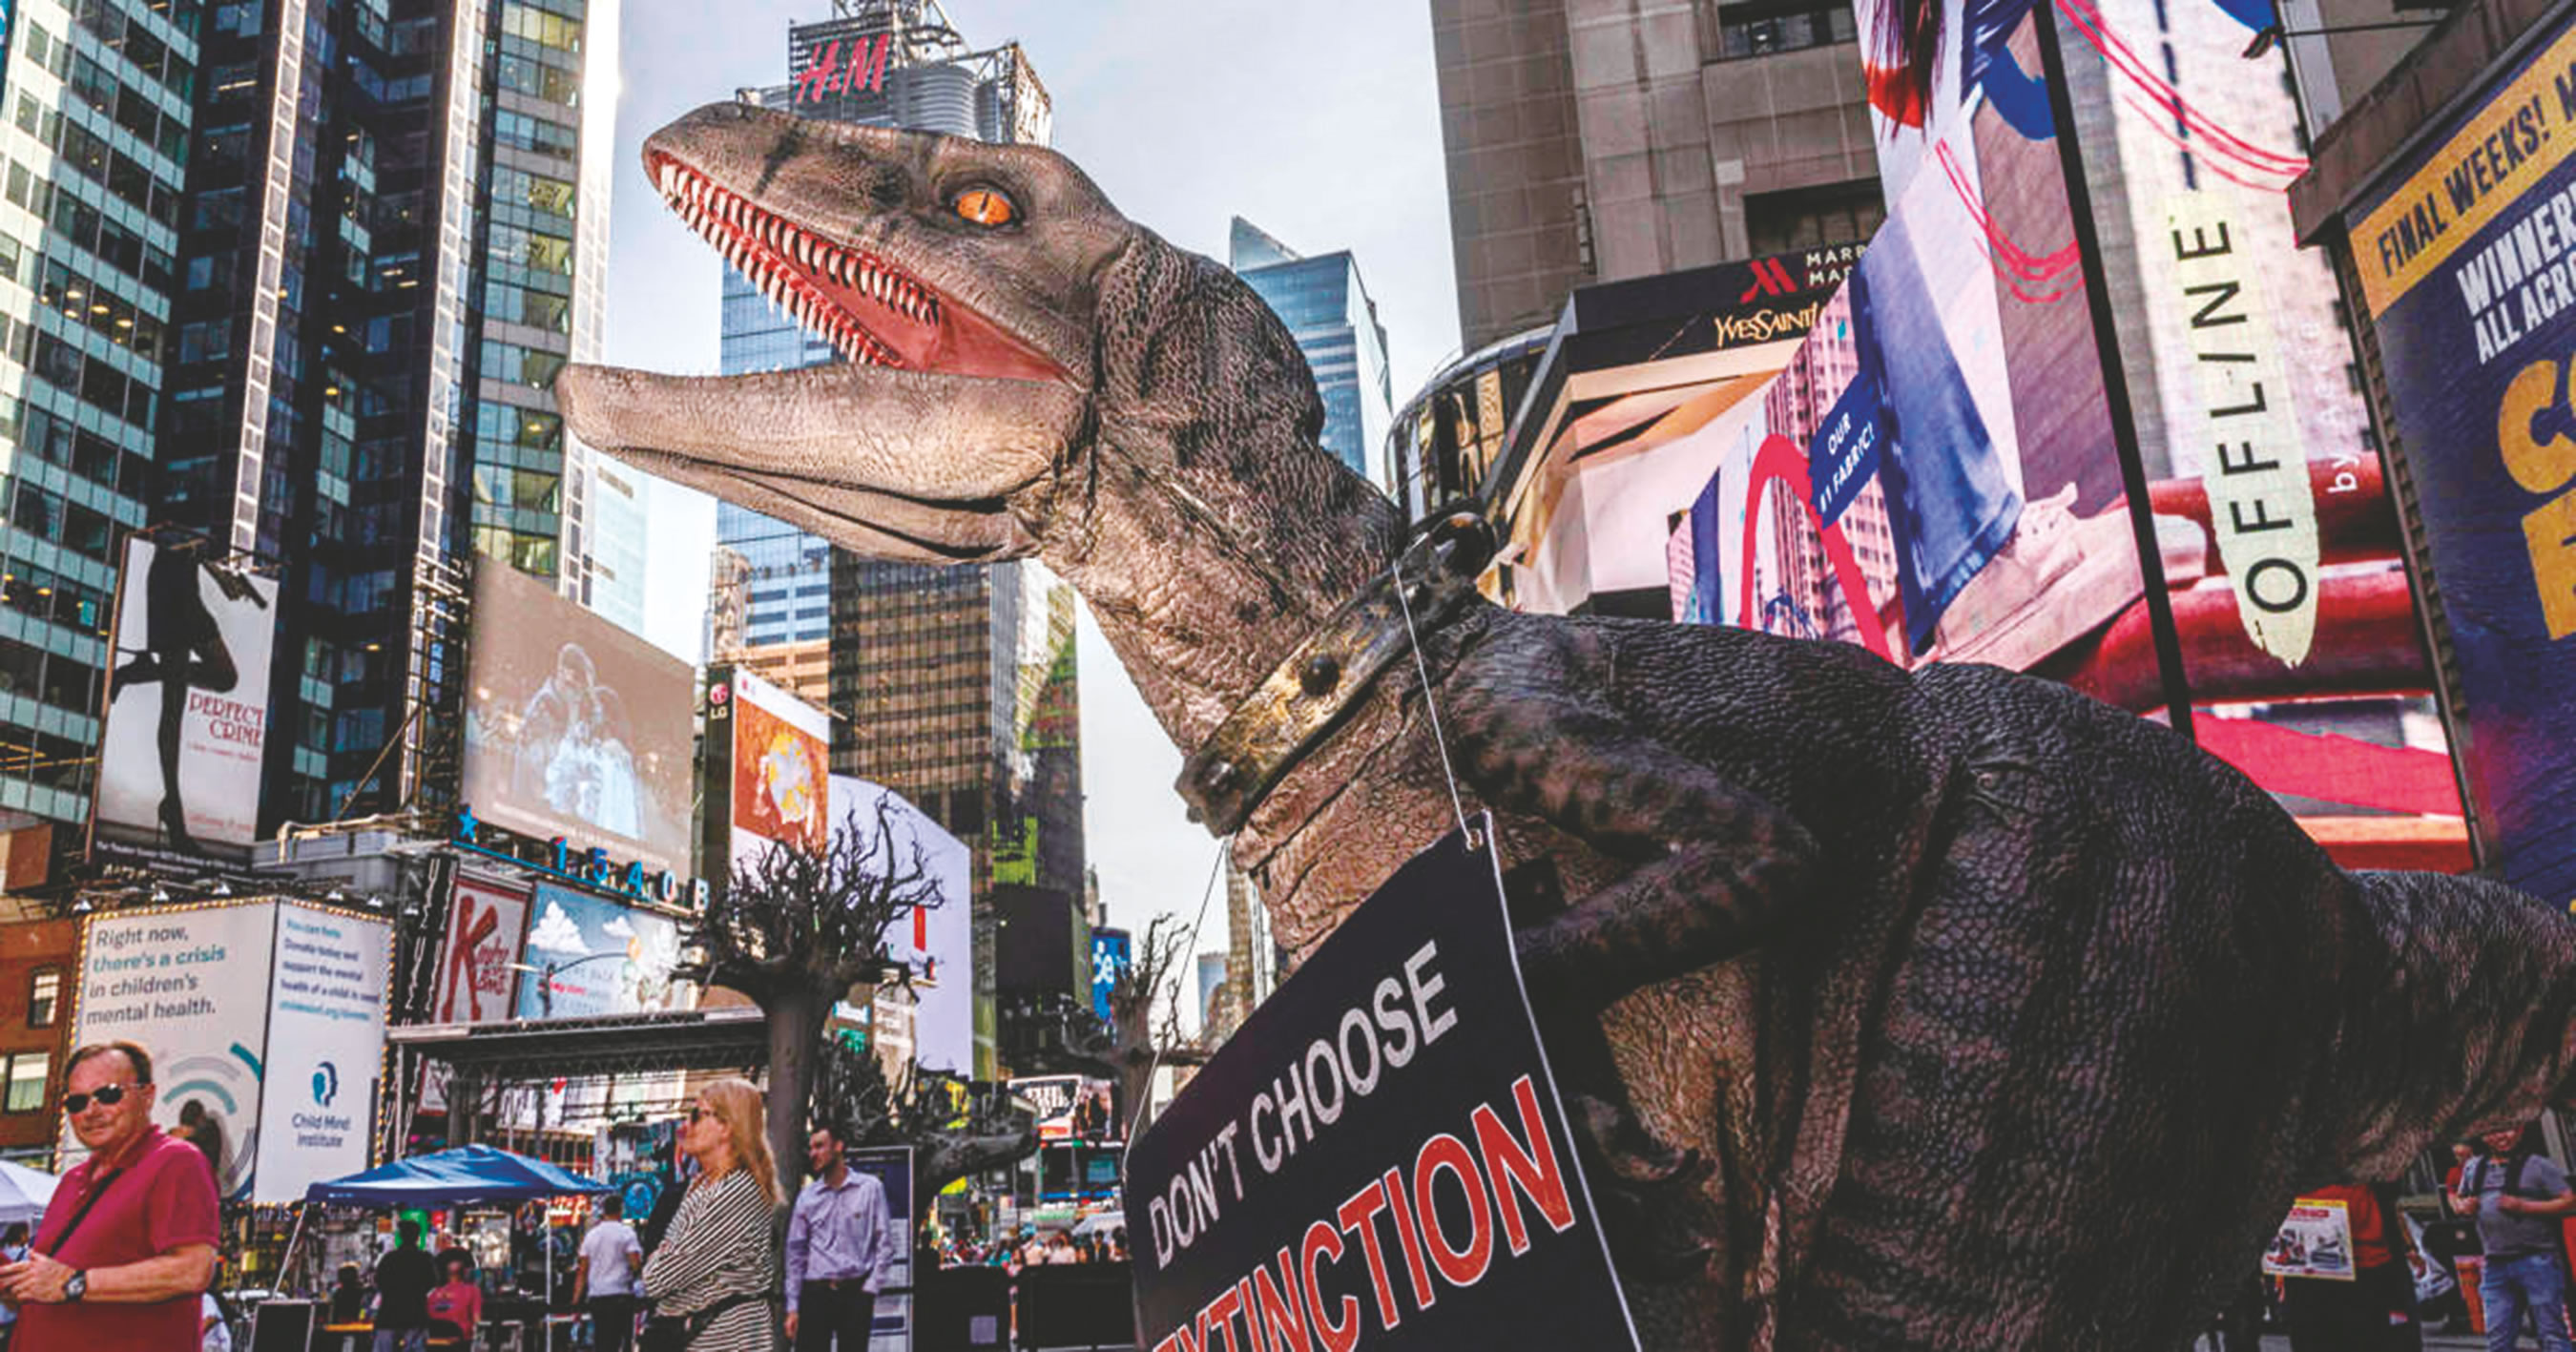 联合国开发计划署的吉祥物恐龙“弗兰基”宣传与气候有关的知识